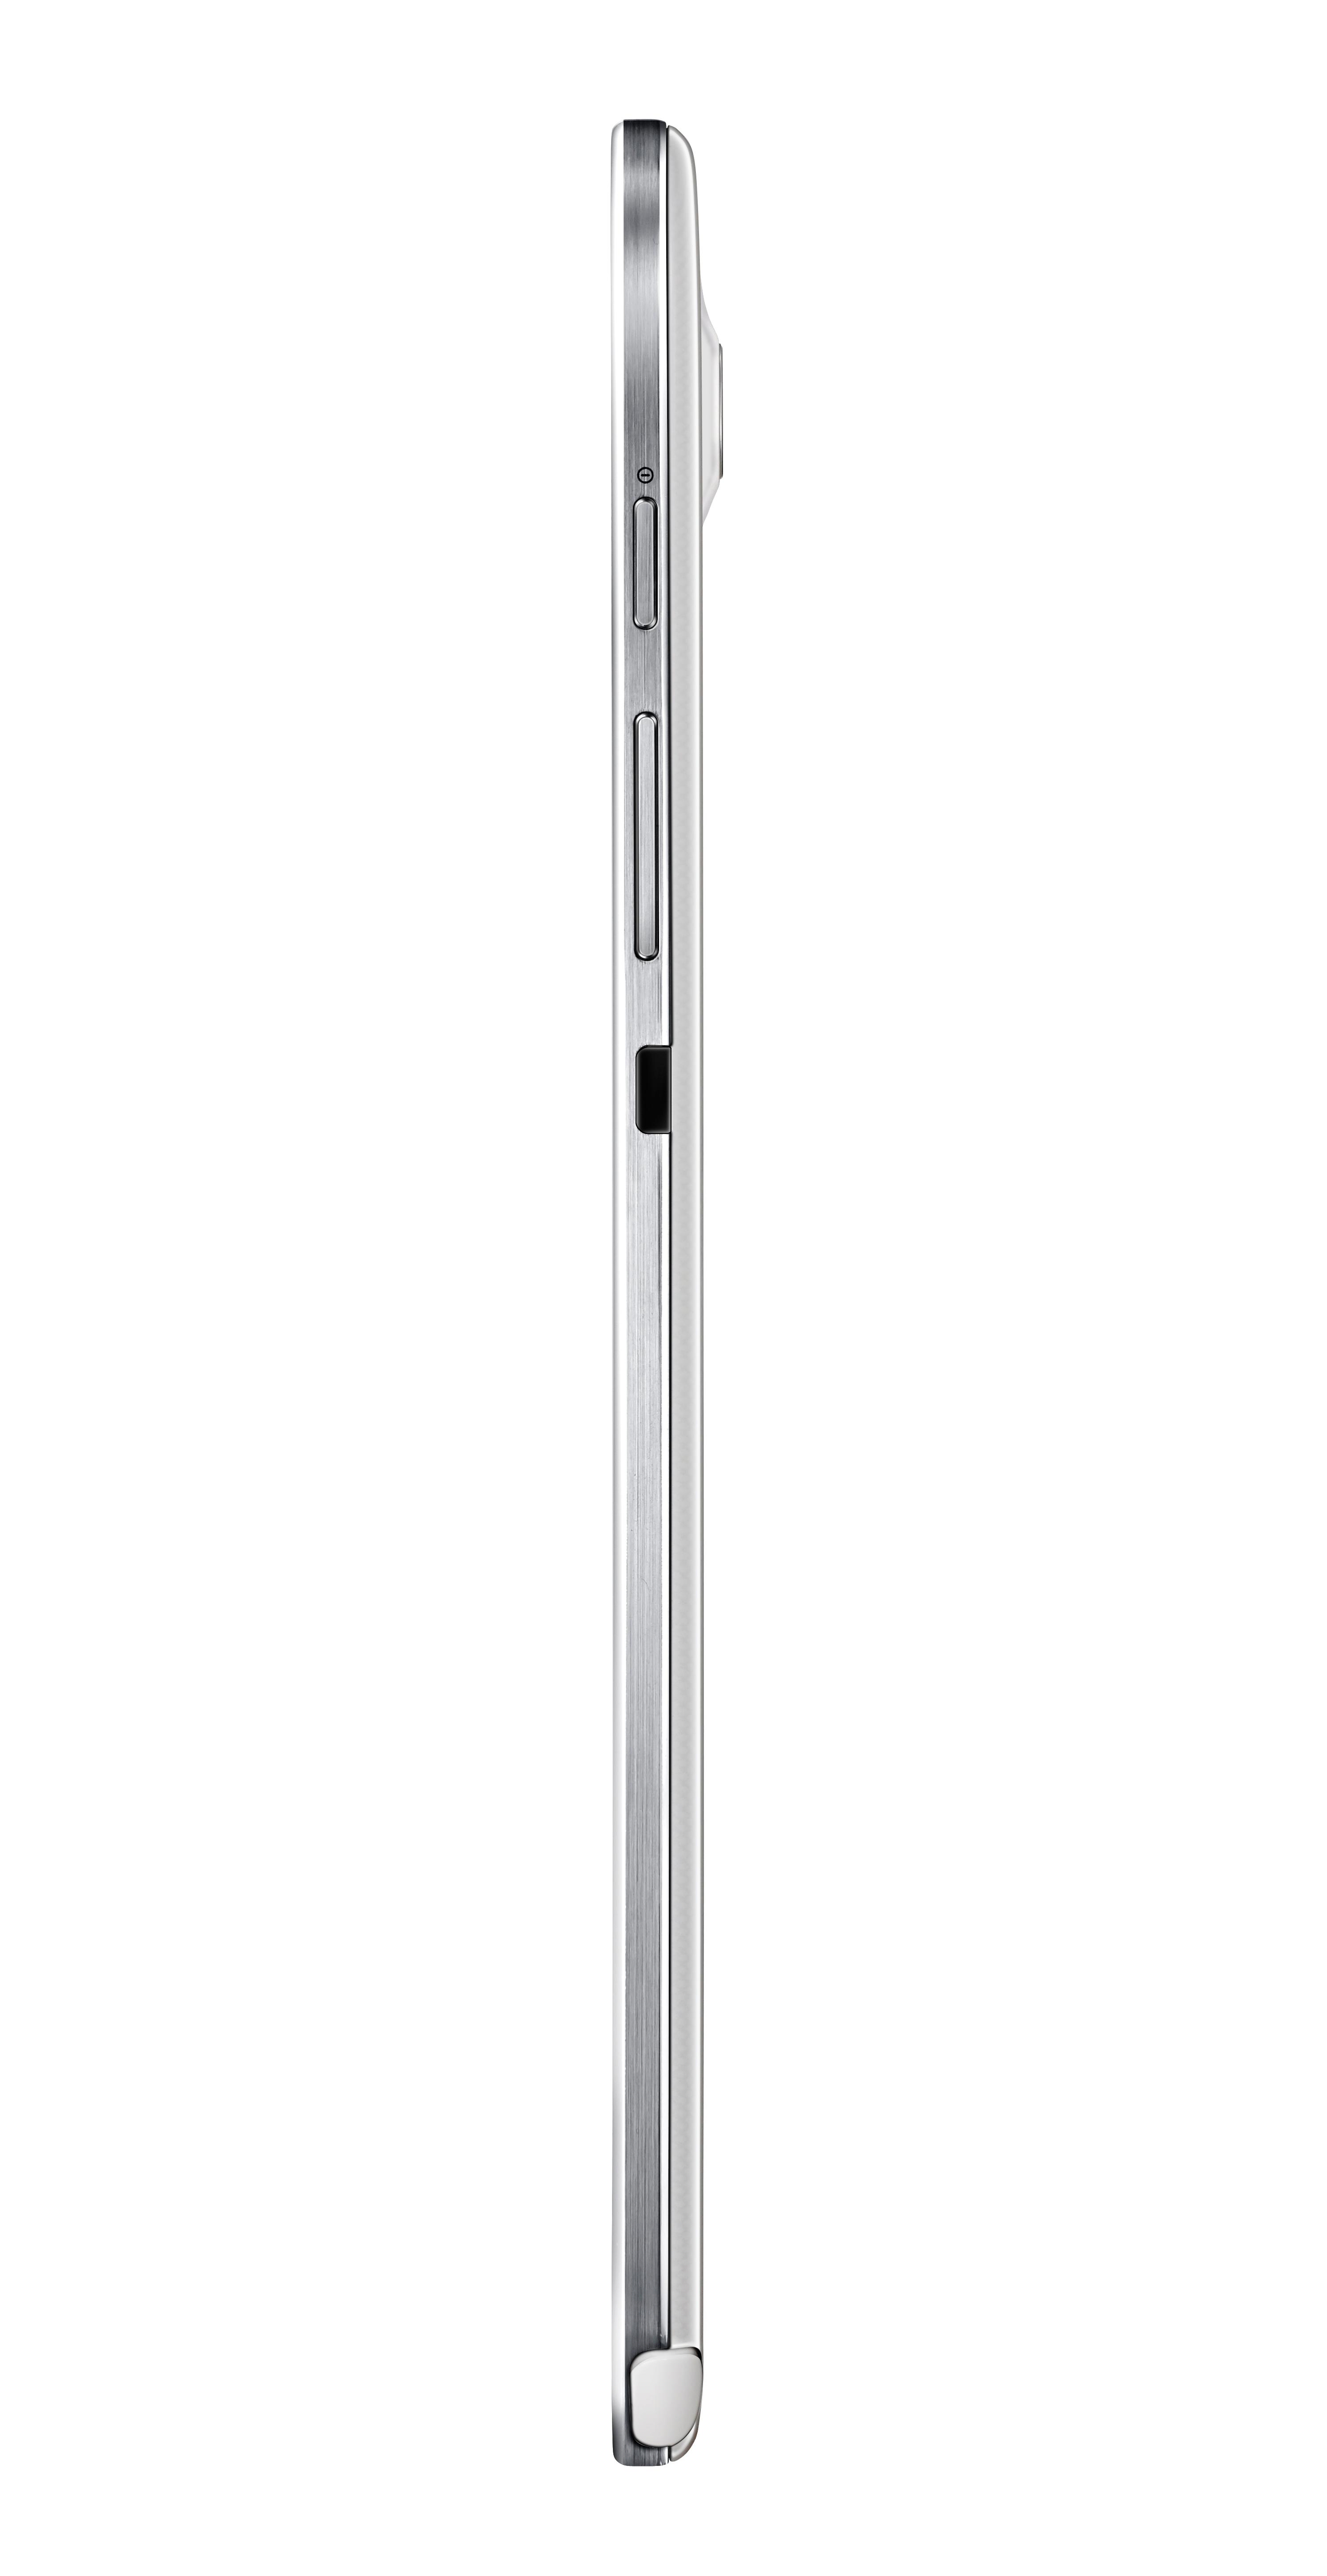 Slik ser Galaxy Note 8.0 ut fra siden.Foto: Samsung